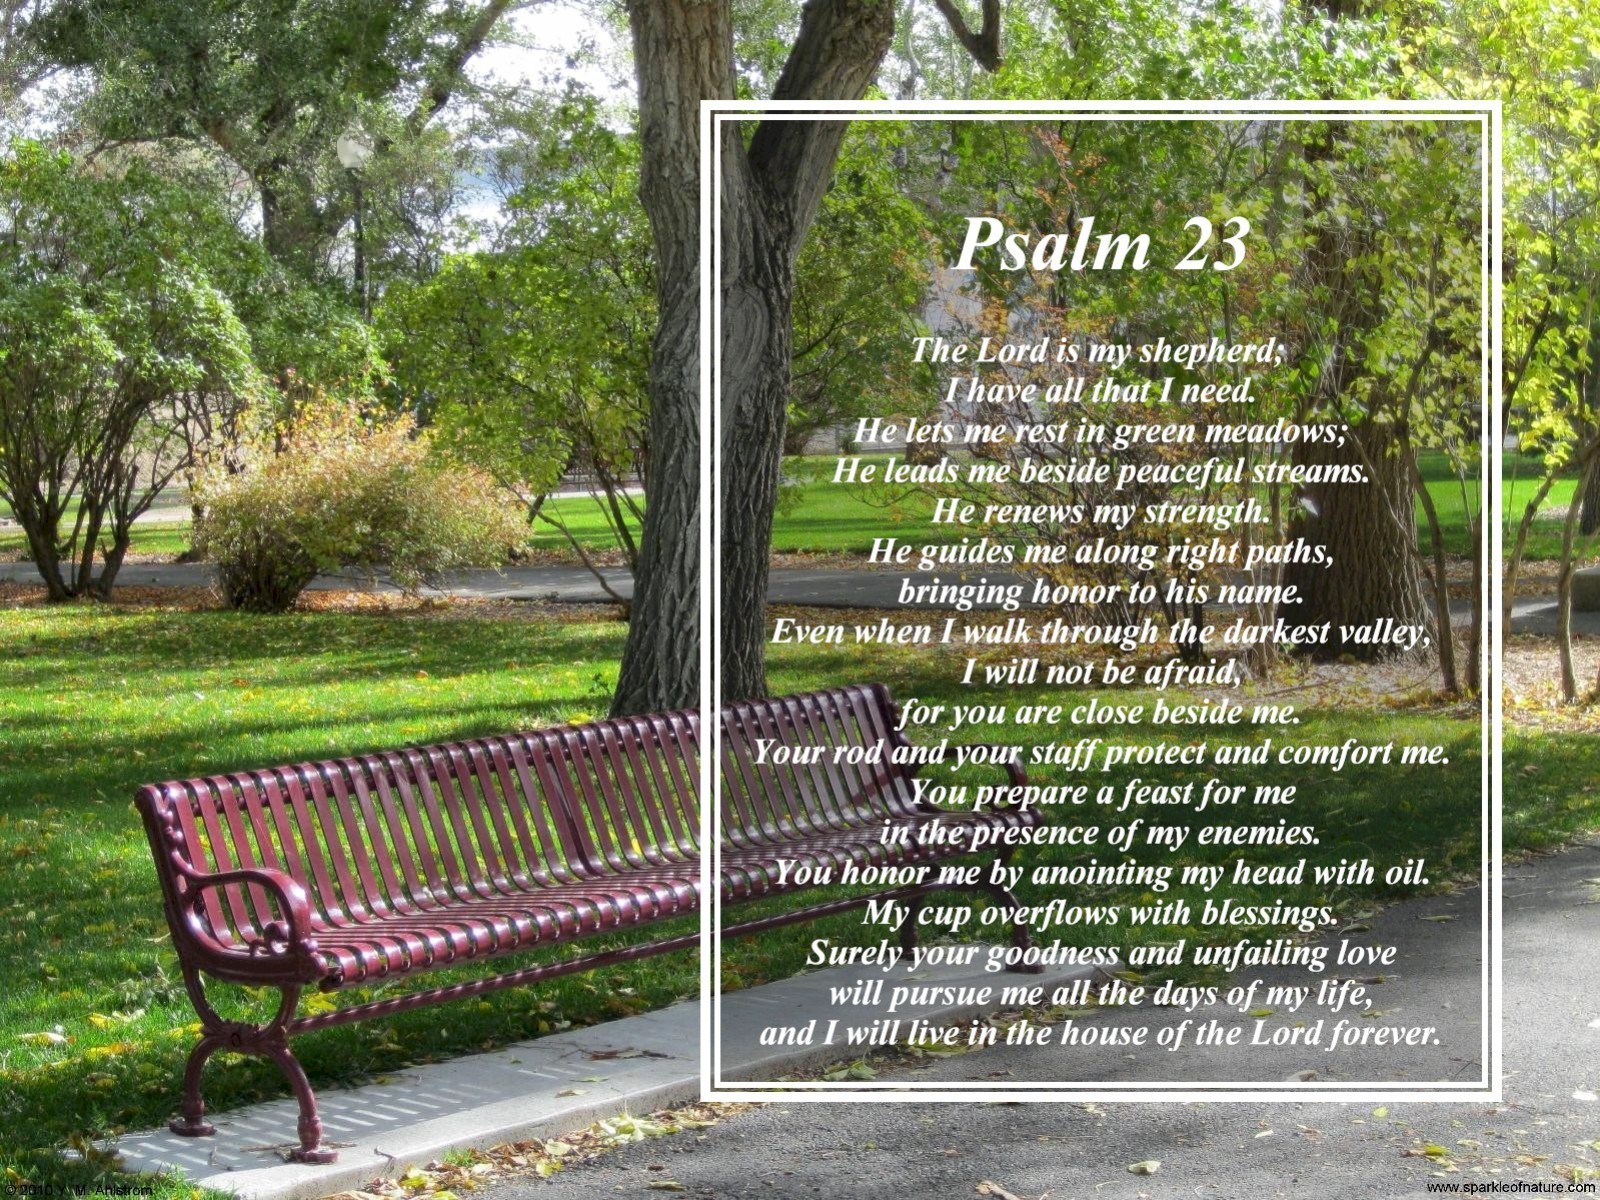 fond d'écran psaume 23,la nature,paysage naturel,arbre,meubles,banc